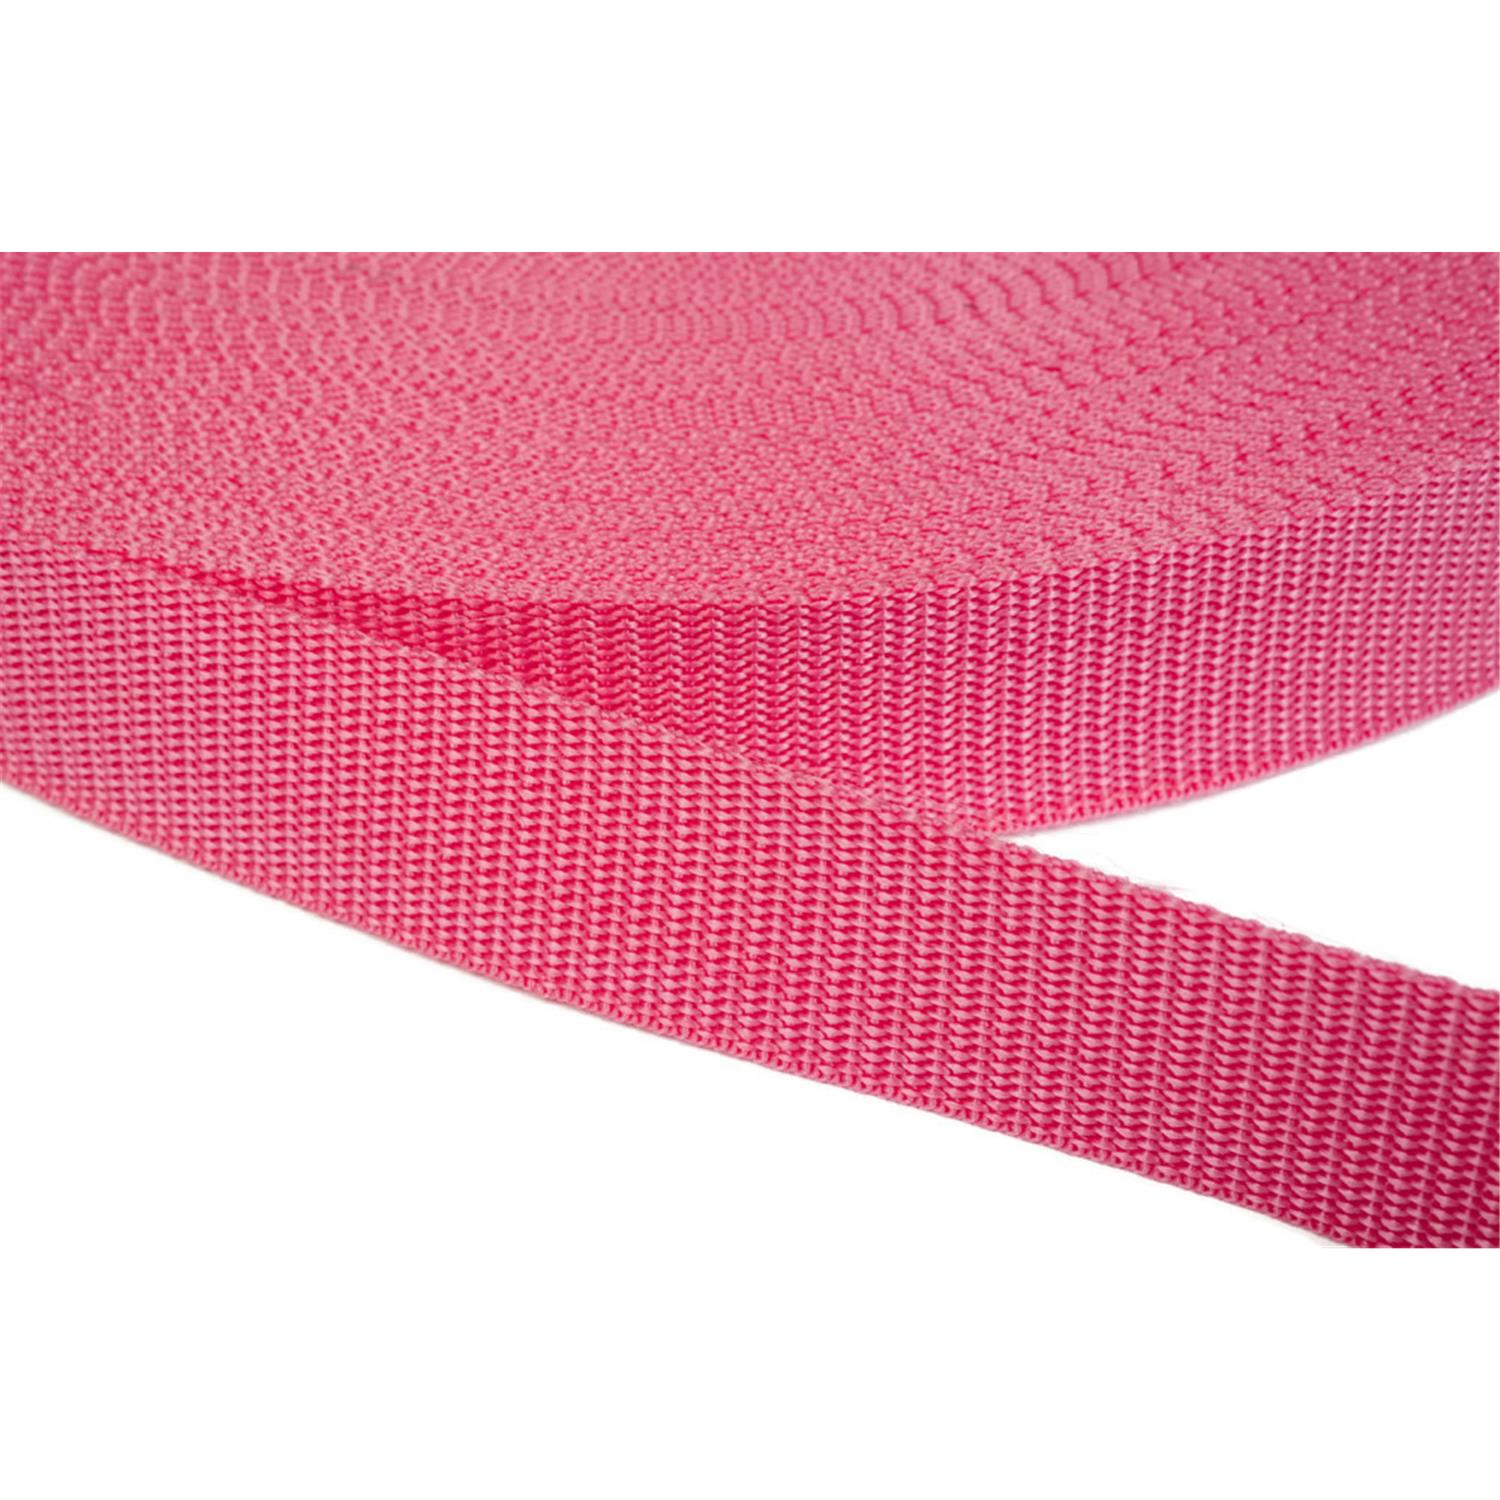 Gurtband 25mm breit aus Polypropylen in 41 Farben 13 - pink 6 Meter